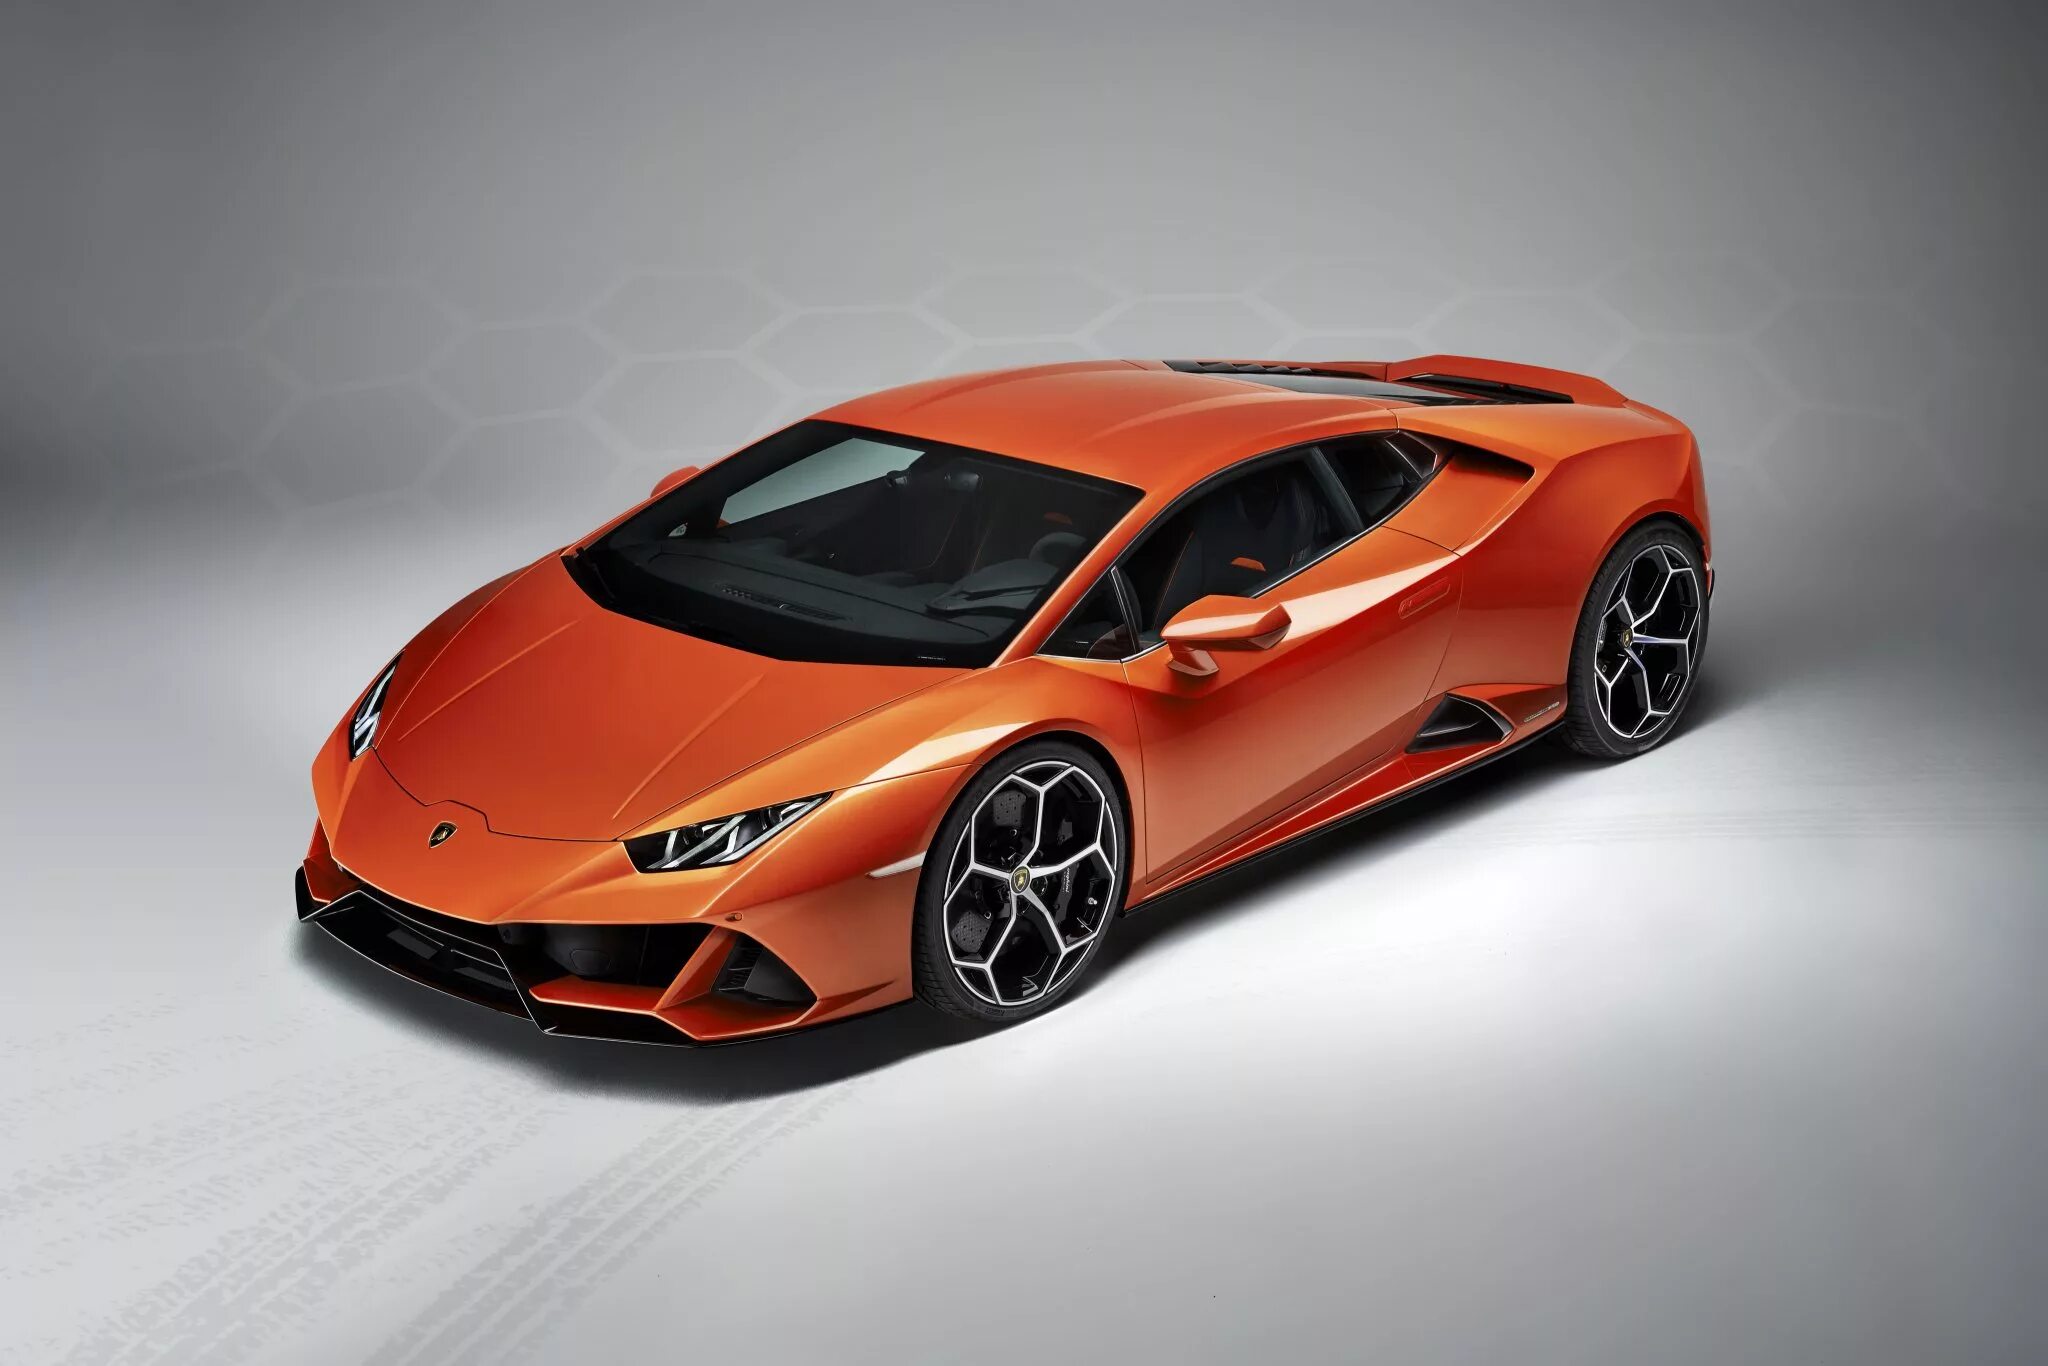 Хуракан эво. Lamborghini Huracan 2020 оранжевый. Lamborghini Huracan EVO 2020 оранжевый. Ламборджини Хуракан 2019. Машина Ламборгини Хуракан оранжевая.